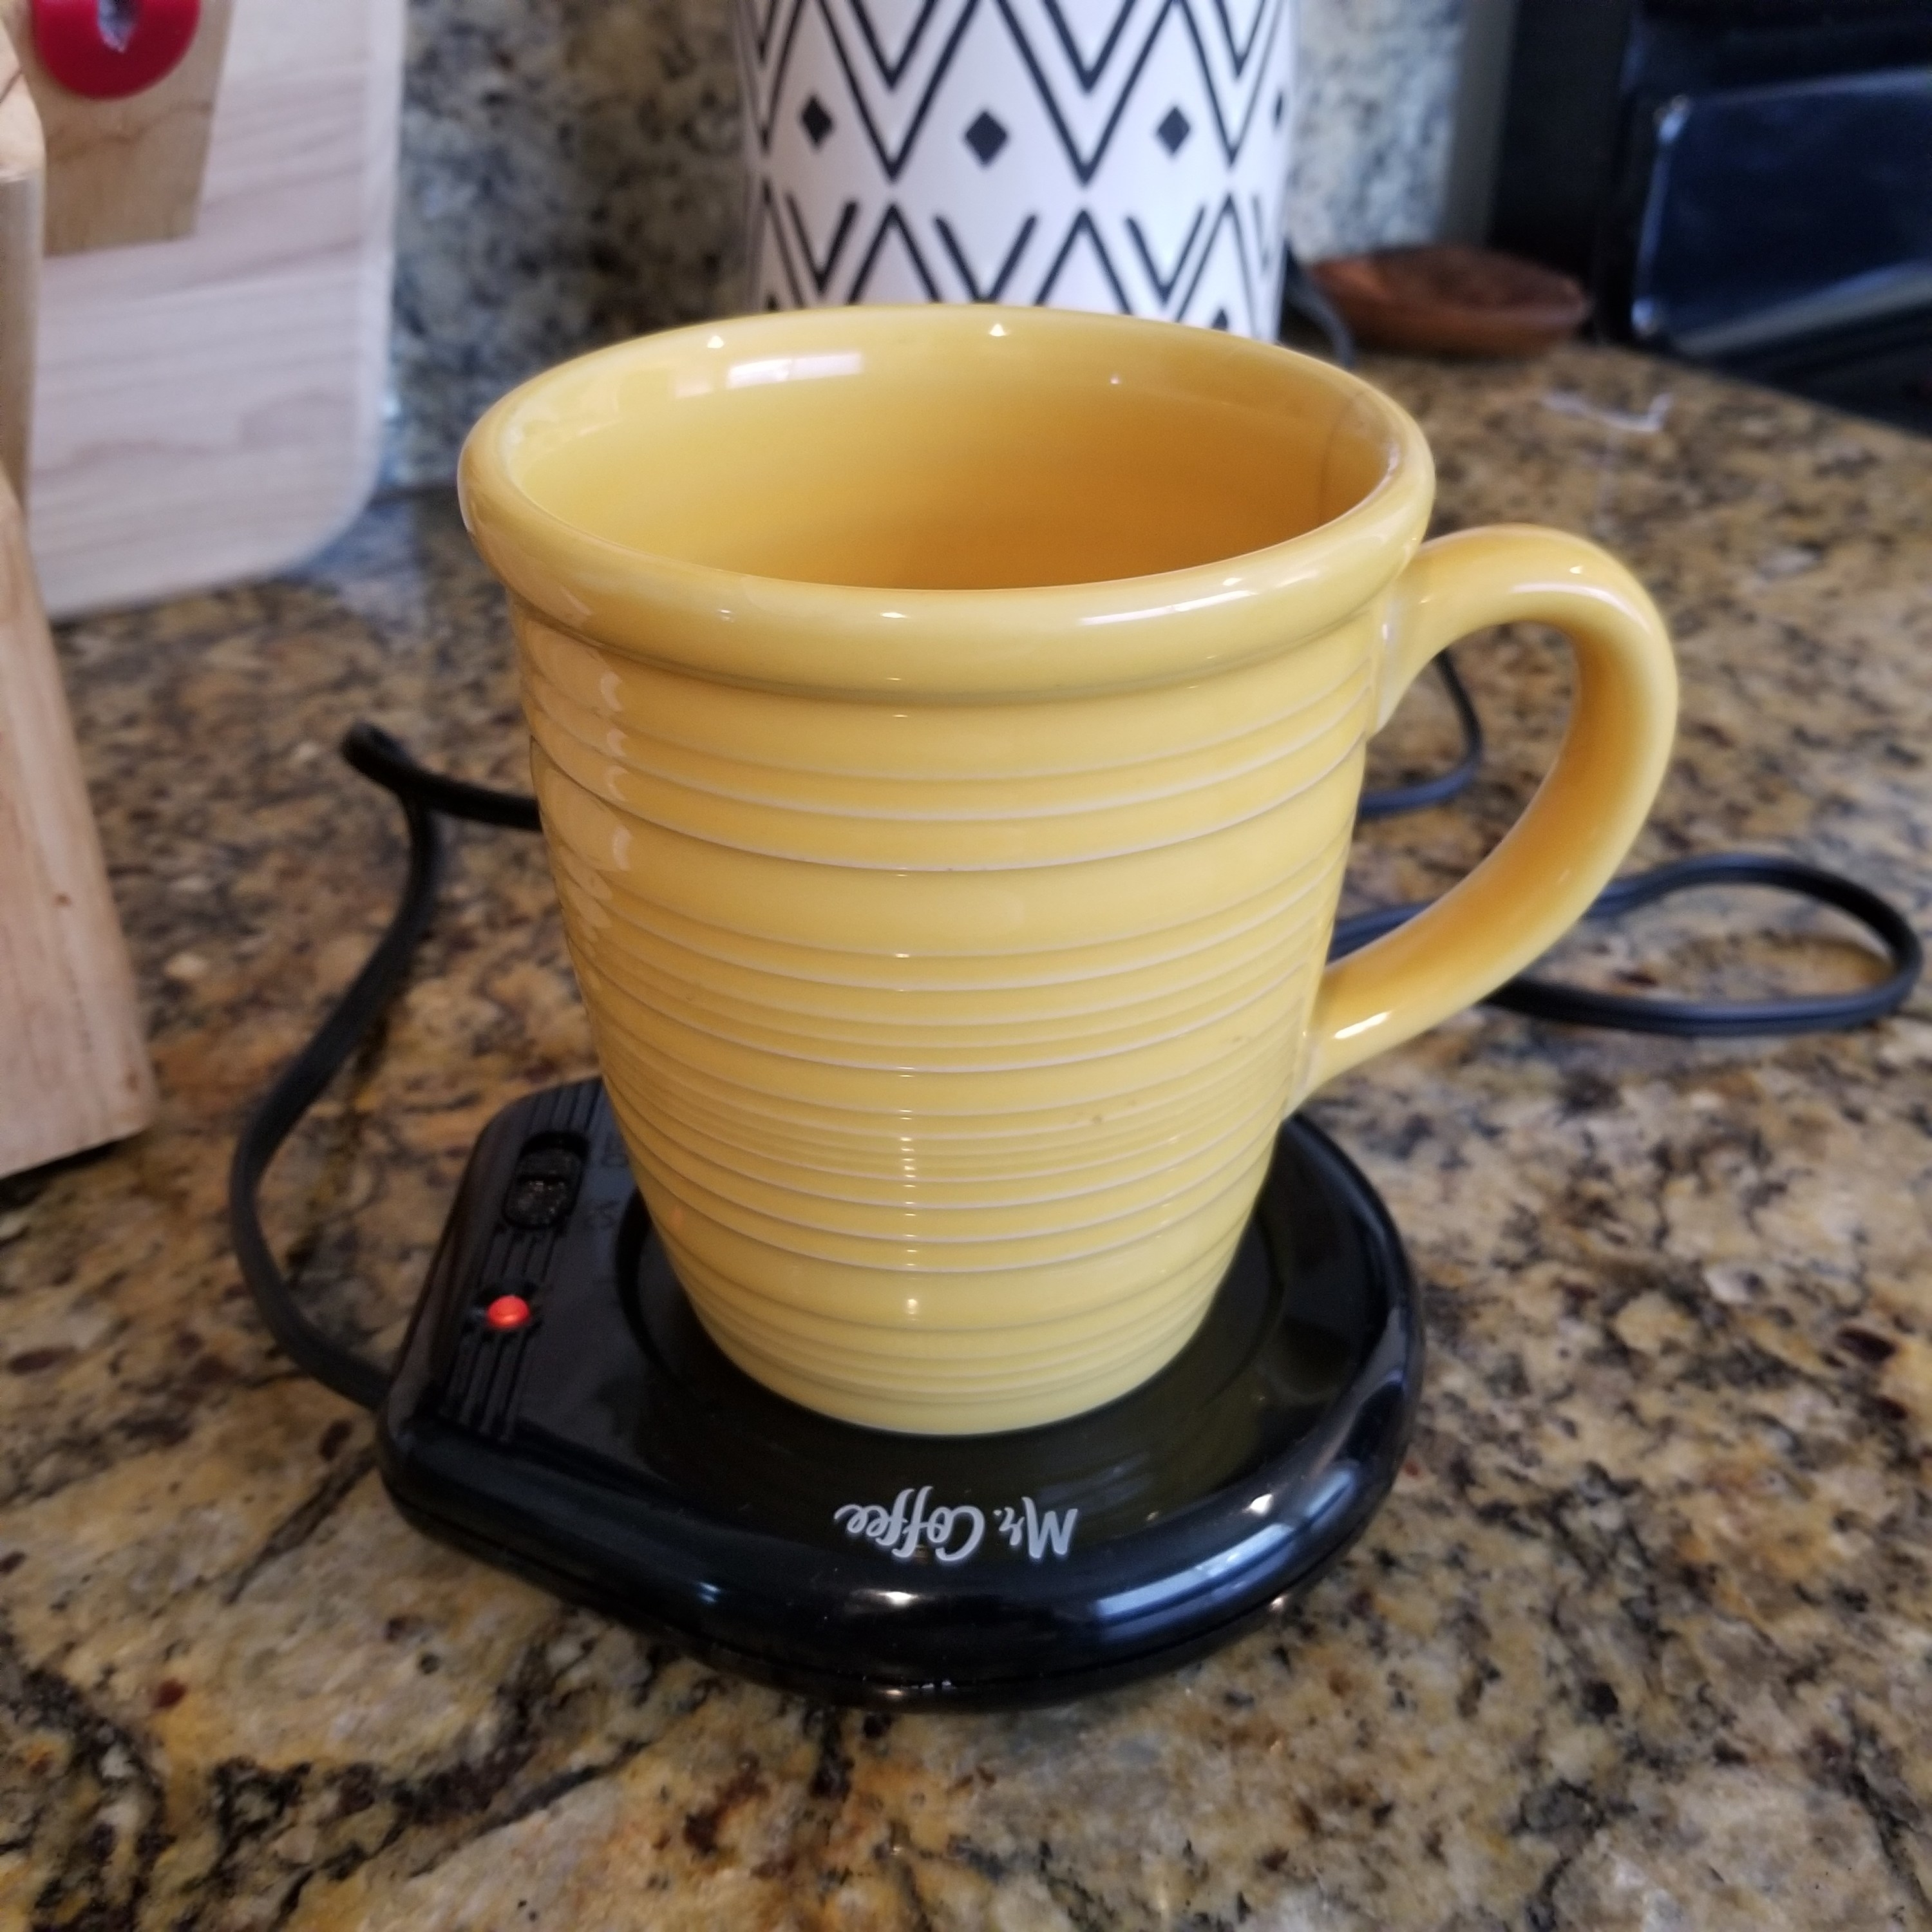 A yellow mug placed on top of the mug warmer